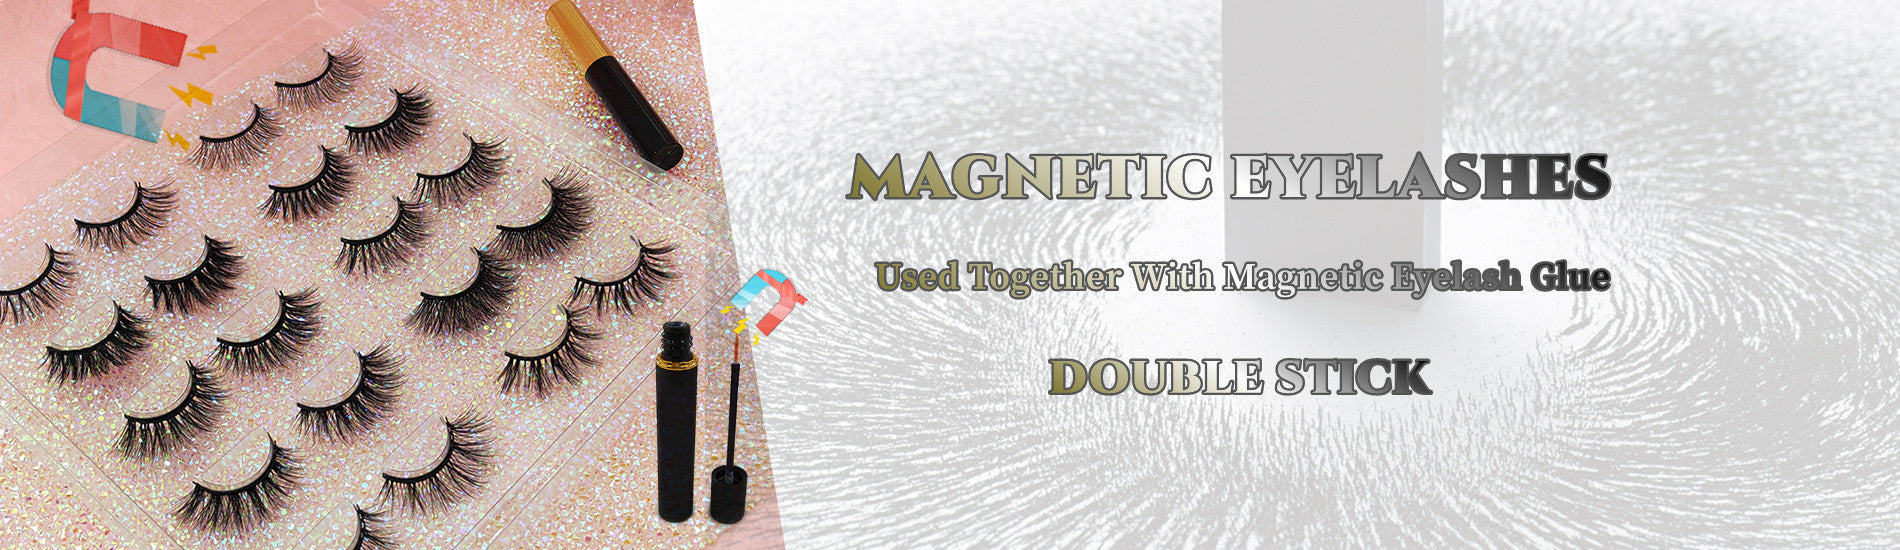 Magnetic eyelash wholesale 